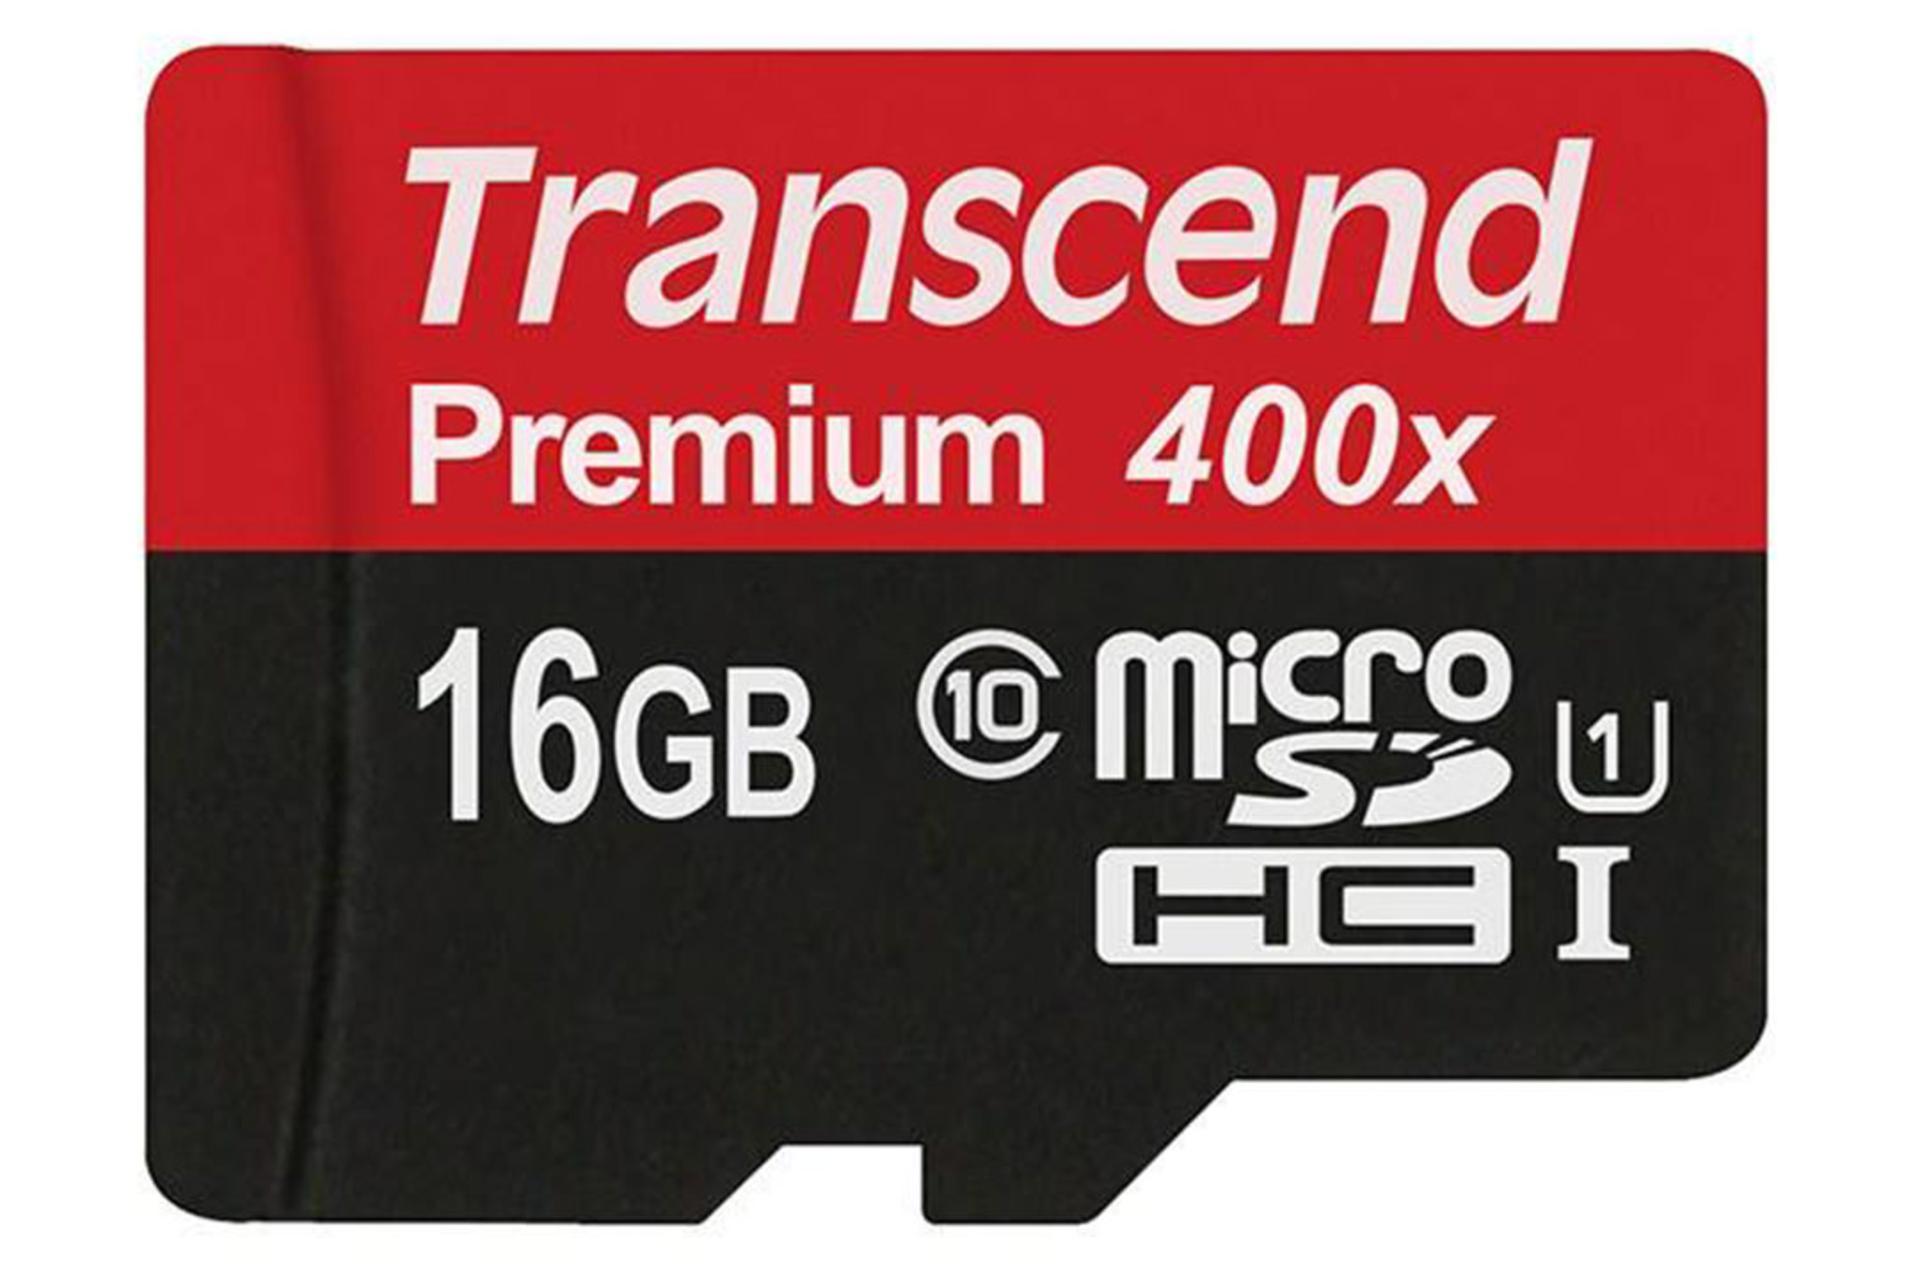 Transcend Premium microSDHC Class 10 UHS-I U1 16GB